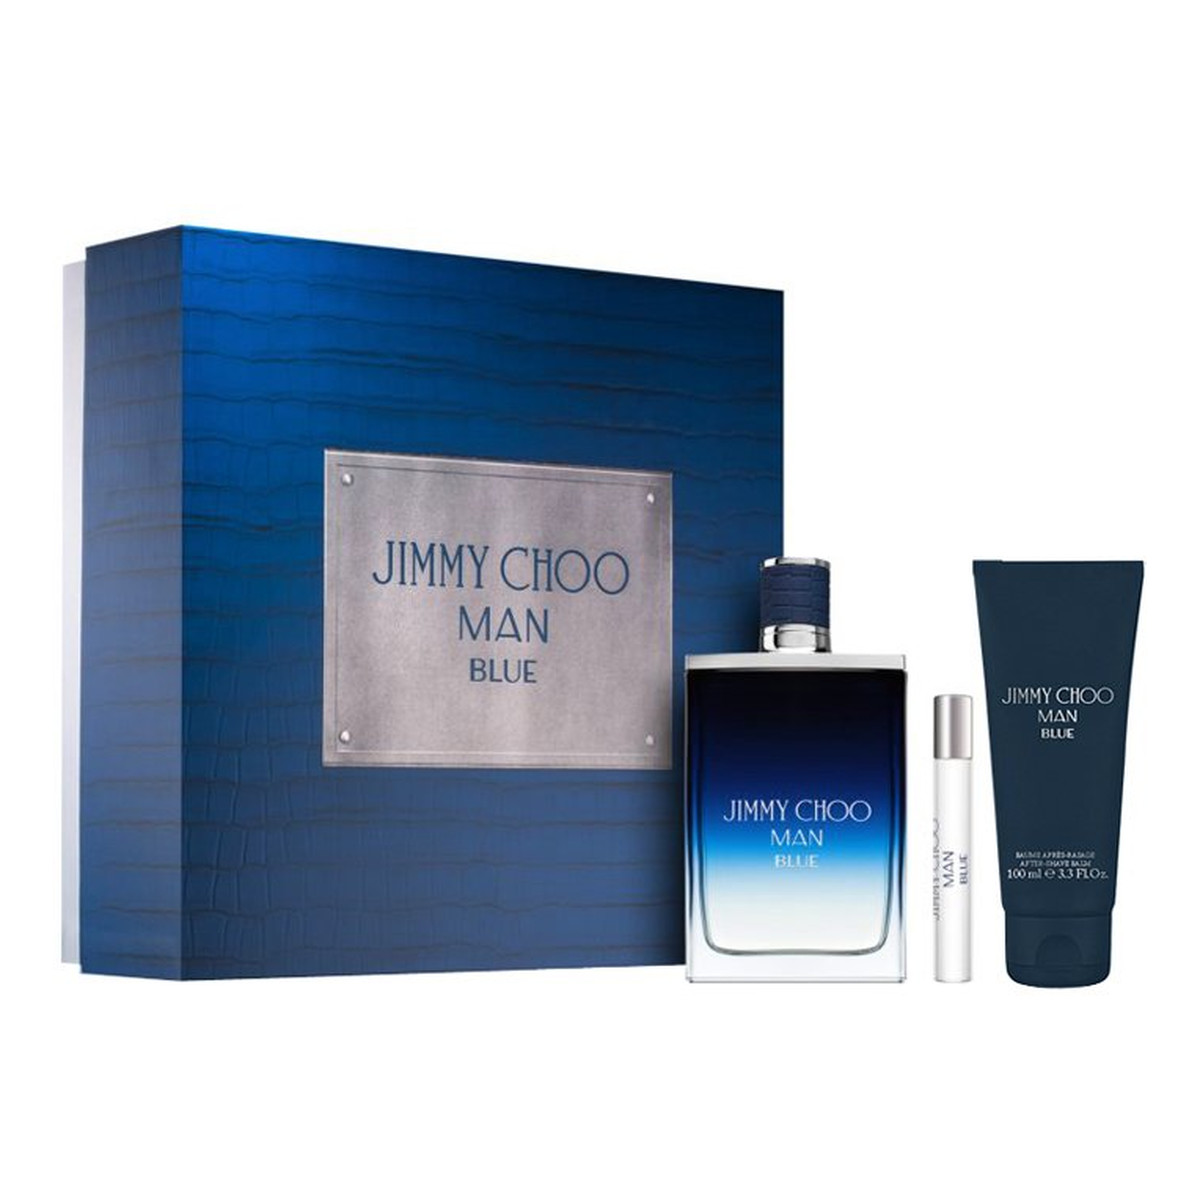 Jimmy Choo Man Blue Zestaw woda toaletowa spray 100ml + miniatura wody toaletowej 7.5ml + balsam po goleniu 100ml